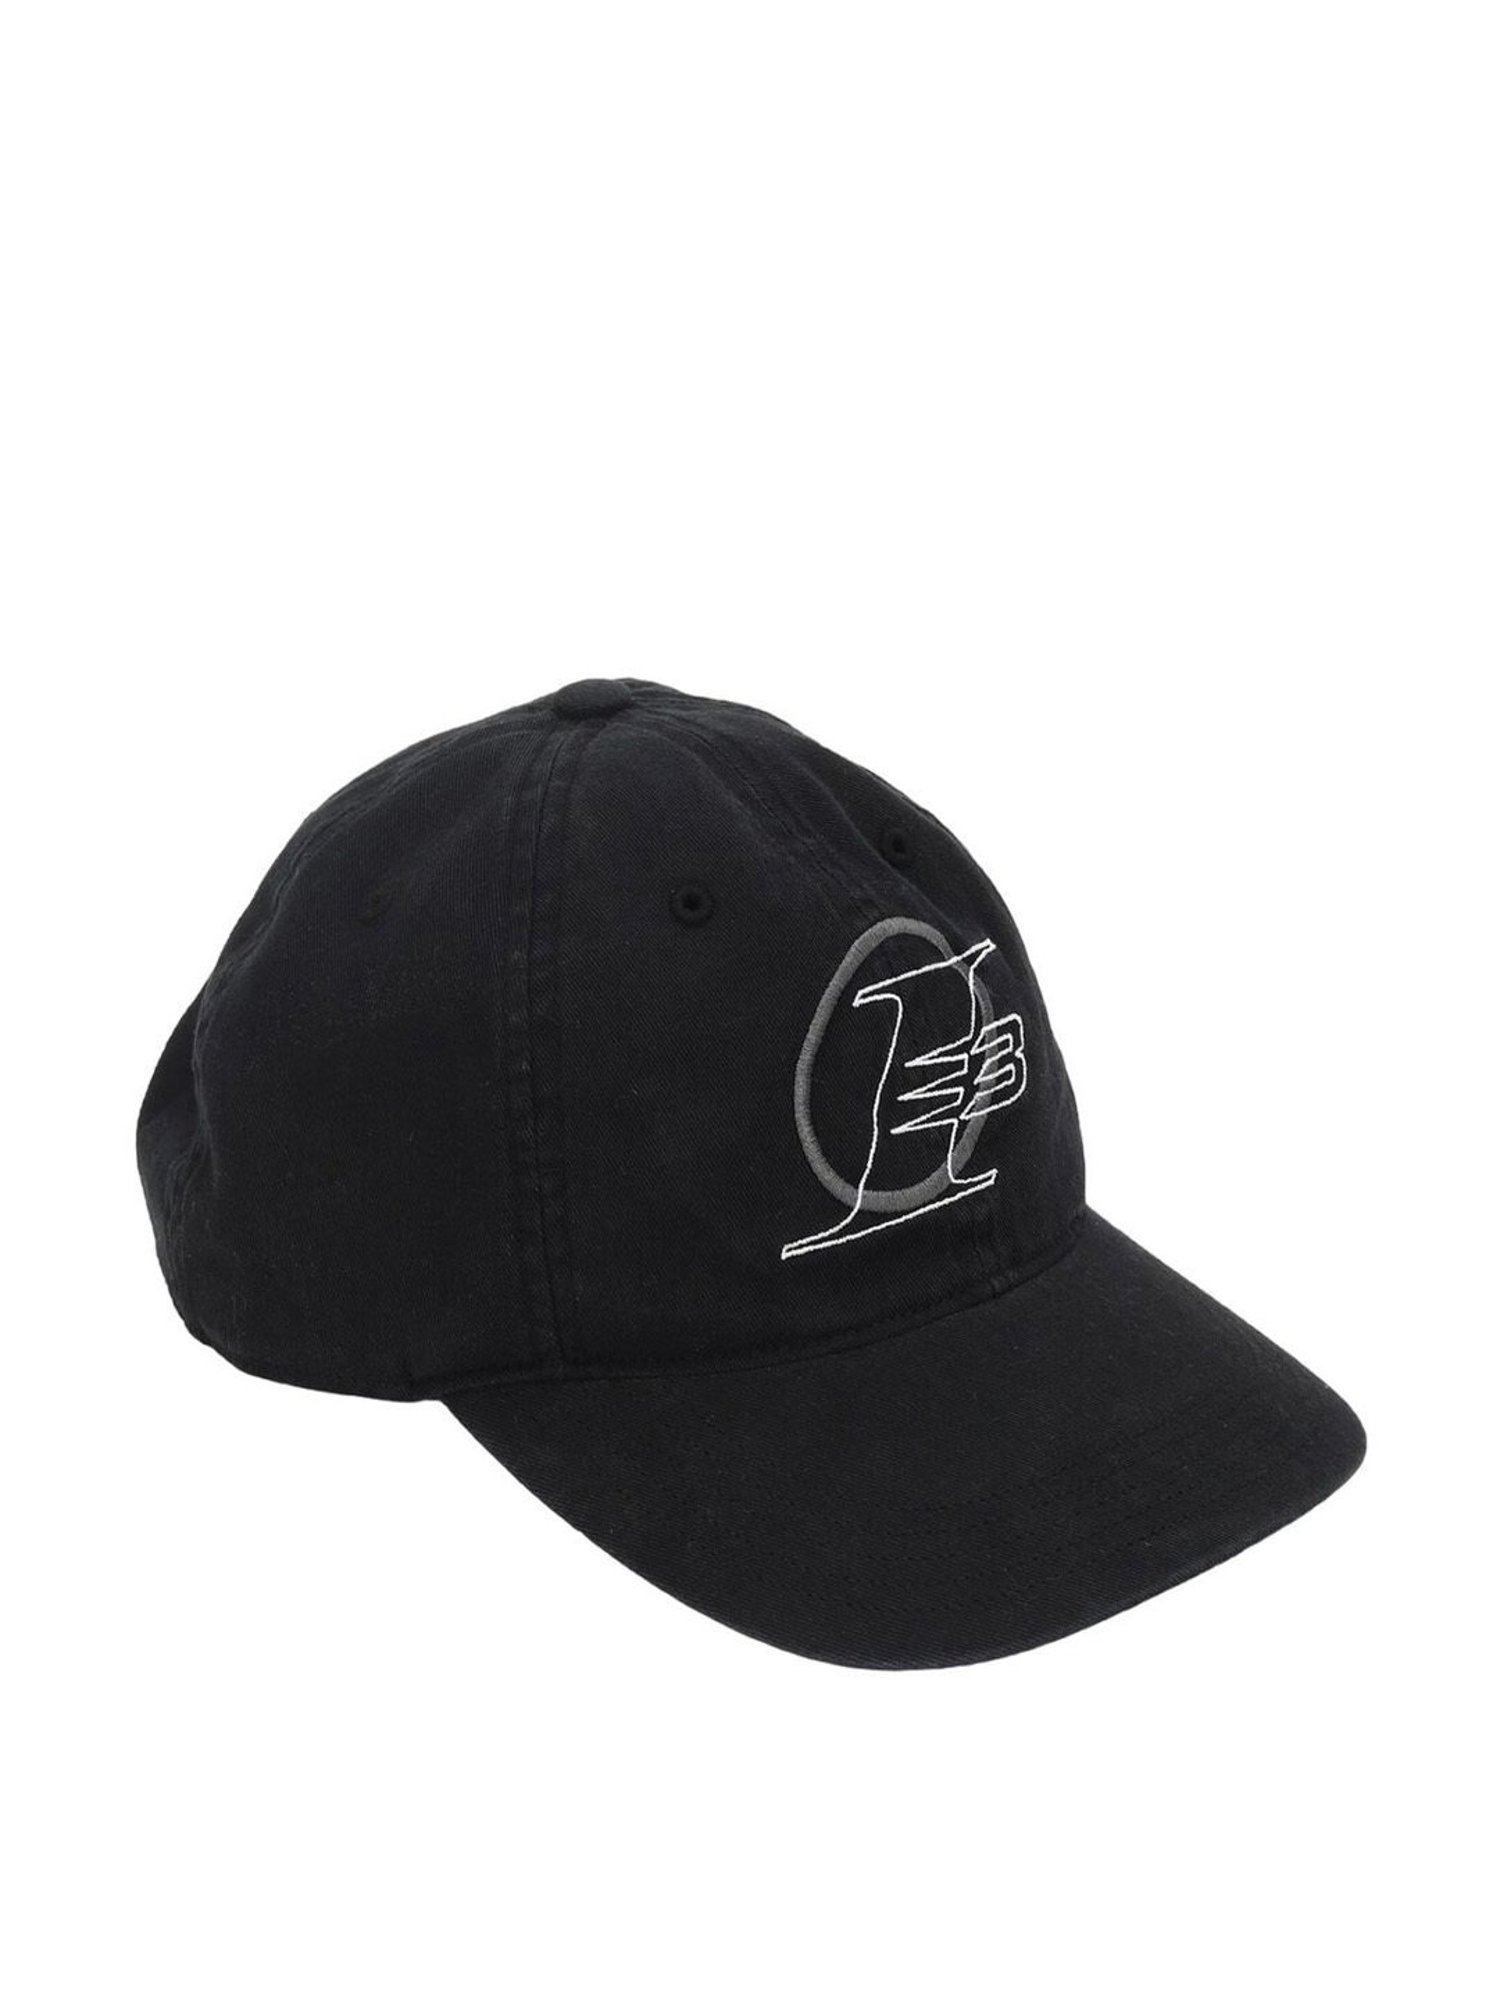 Buy Reebok Cl Headwear Black Cotton Baseball Cap Online At Best 